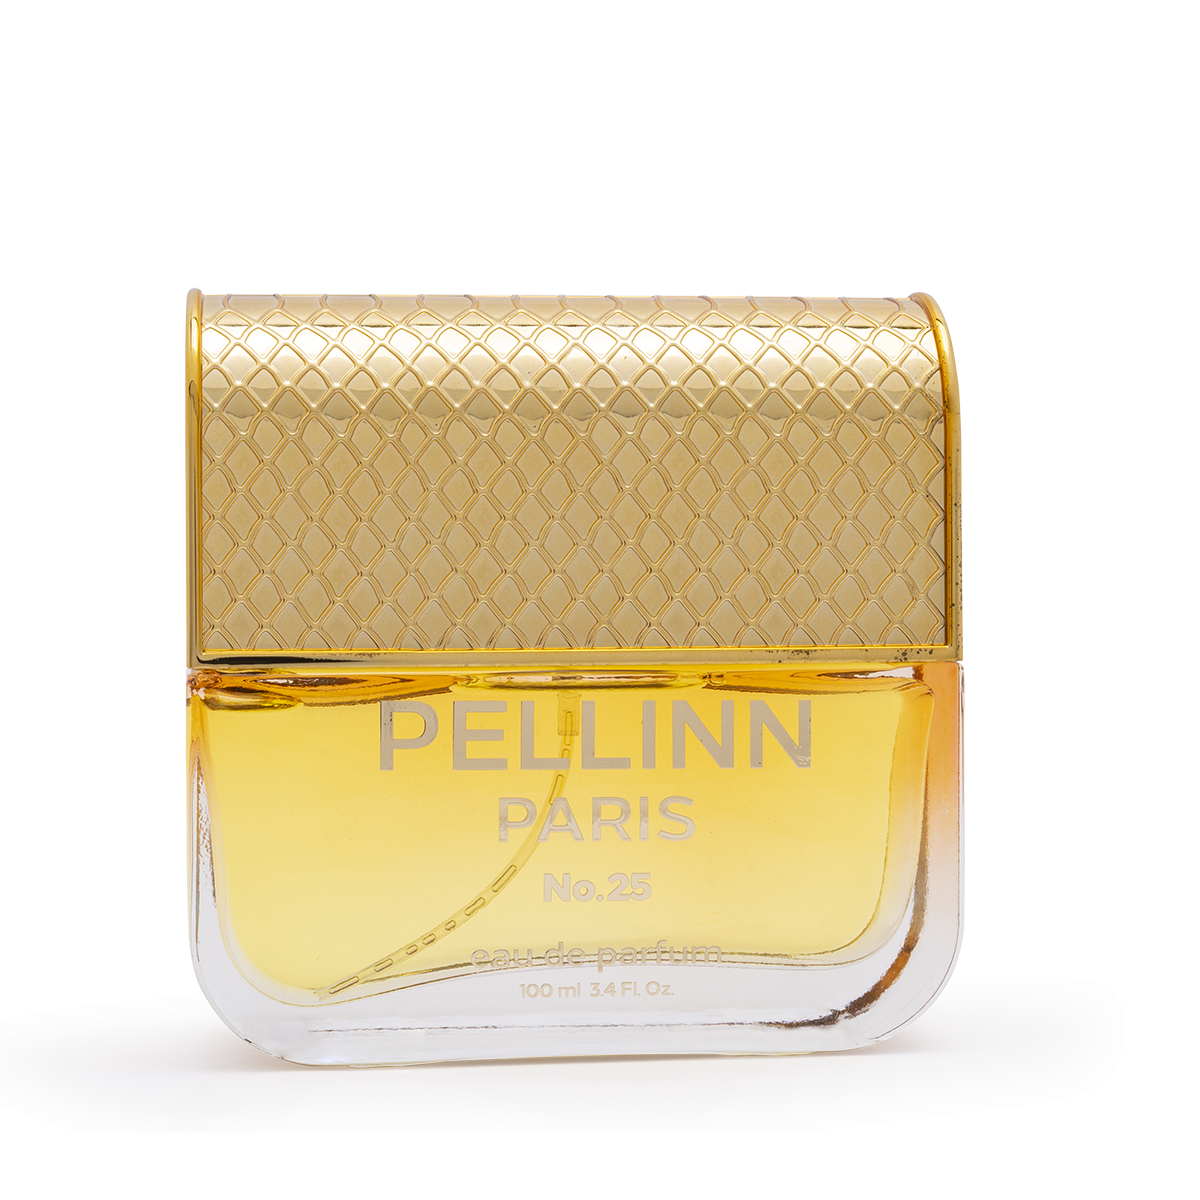 Pellinn Paris No.25 Çiçeksi Kadın EDP Parfüm 100 ml  Pellinn Paris Parfüm